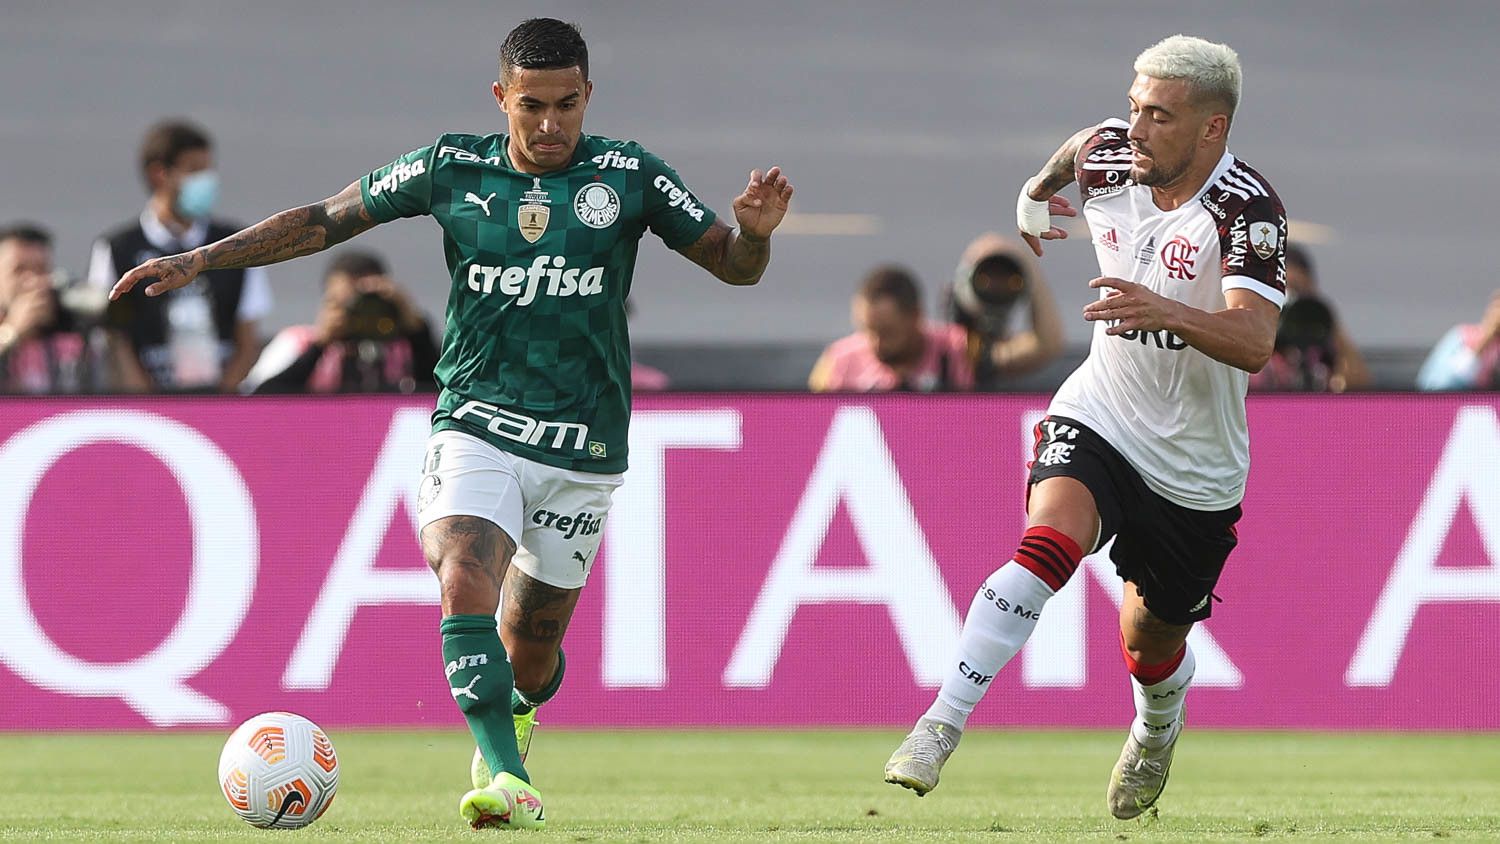 Flamengo x Palmeiras: horário e onde assistir jogo do Brasileirão